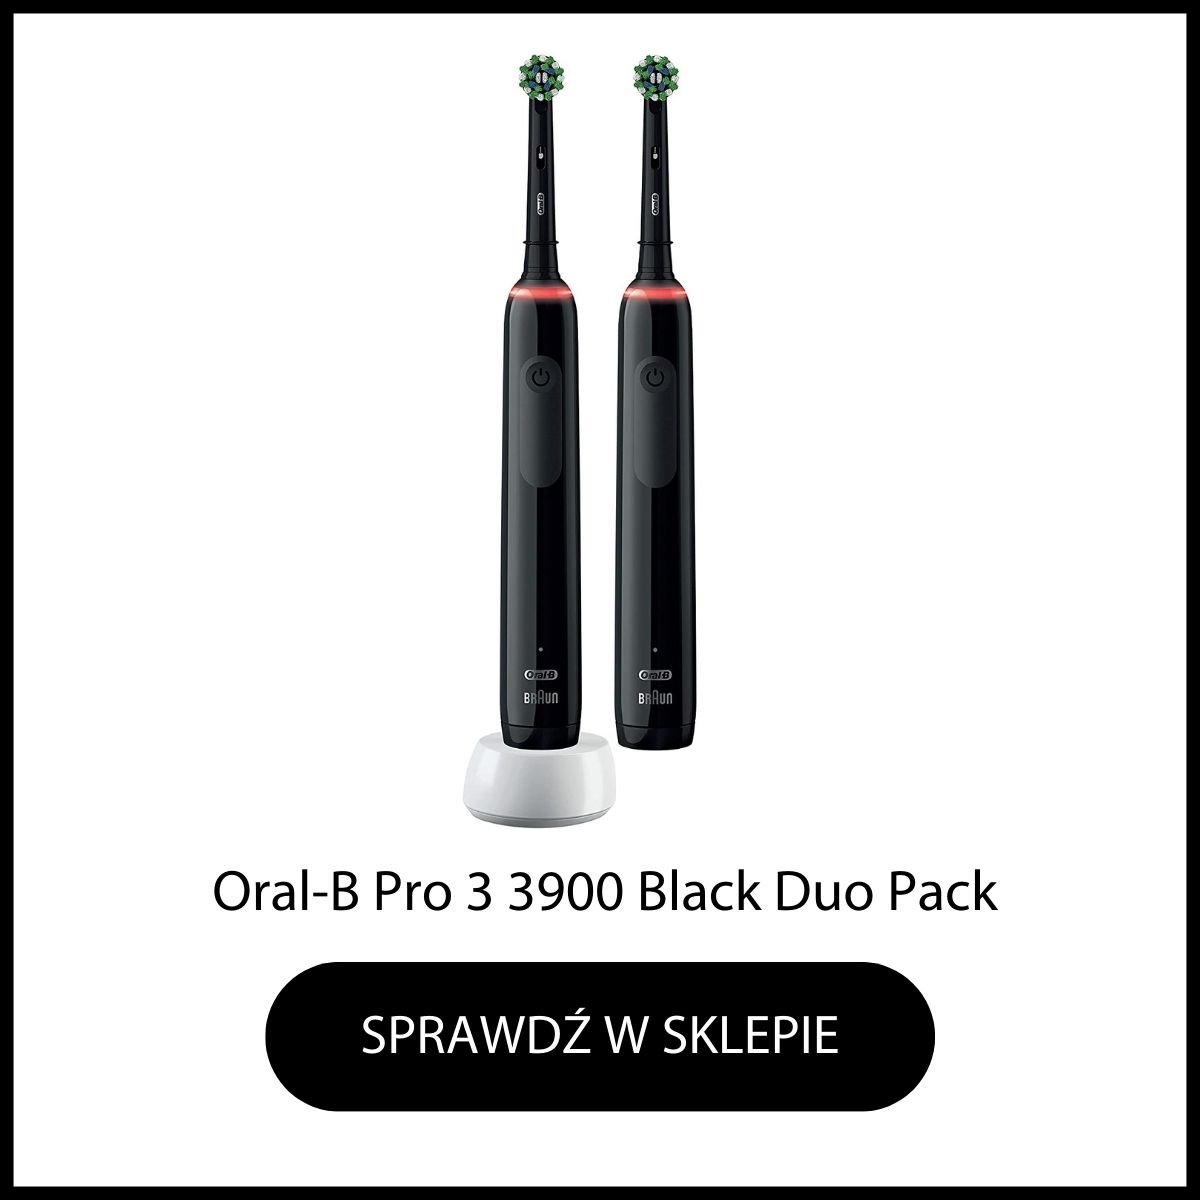 OralB Pro 3 3900 Black Cross Action szczoteczka elektryczna zestaw duo pack